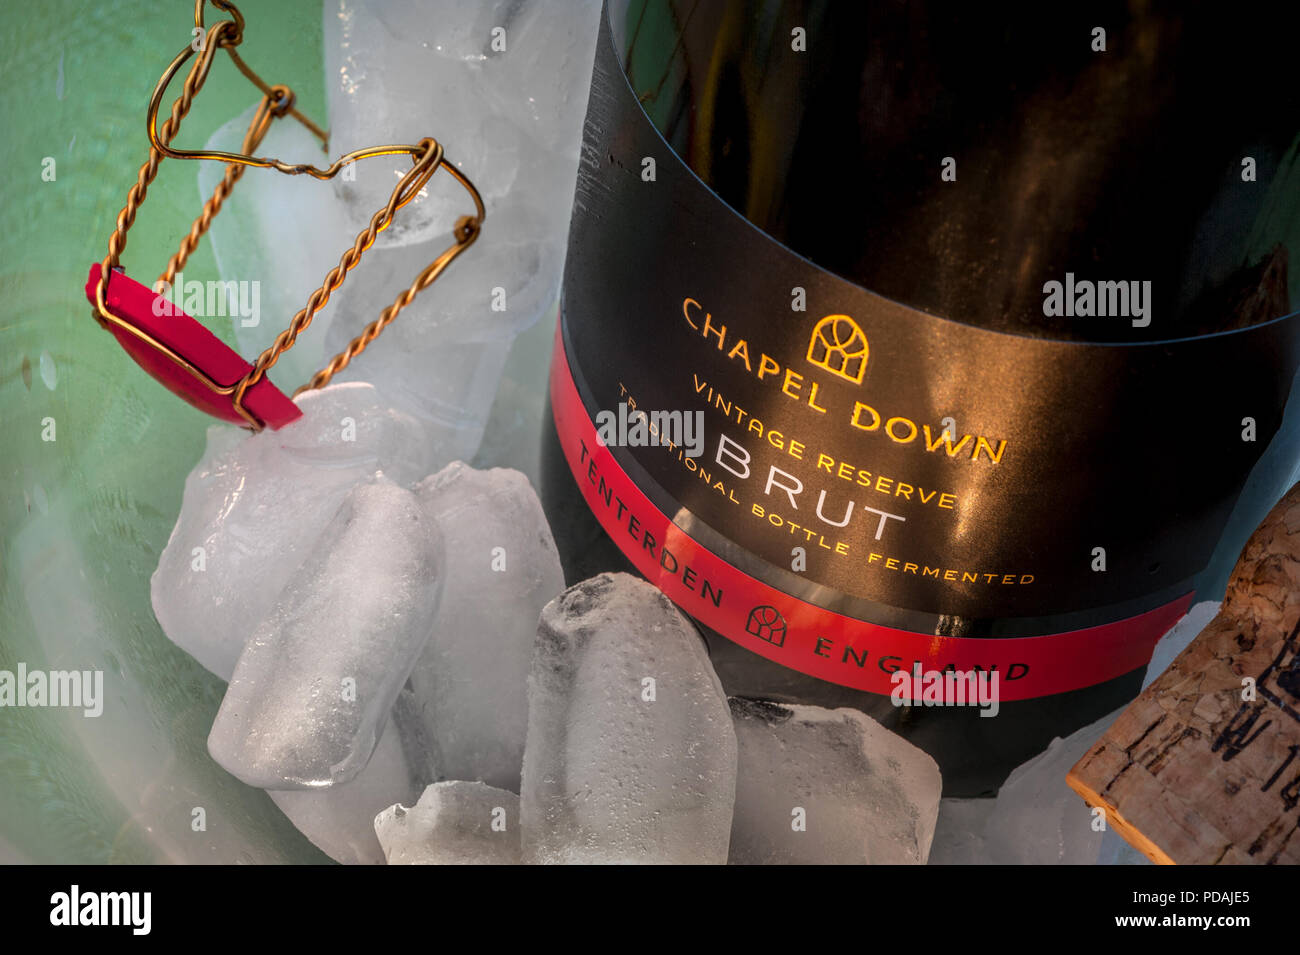 Botella de vino espumoso blanco inglés etiqueta "Capilla abajo Brut' sobre hielo en enfriador de vino, con corcho y tapa retenedora en situación de comedor atmosférica Foto de stock